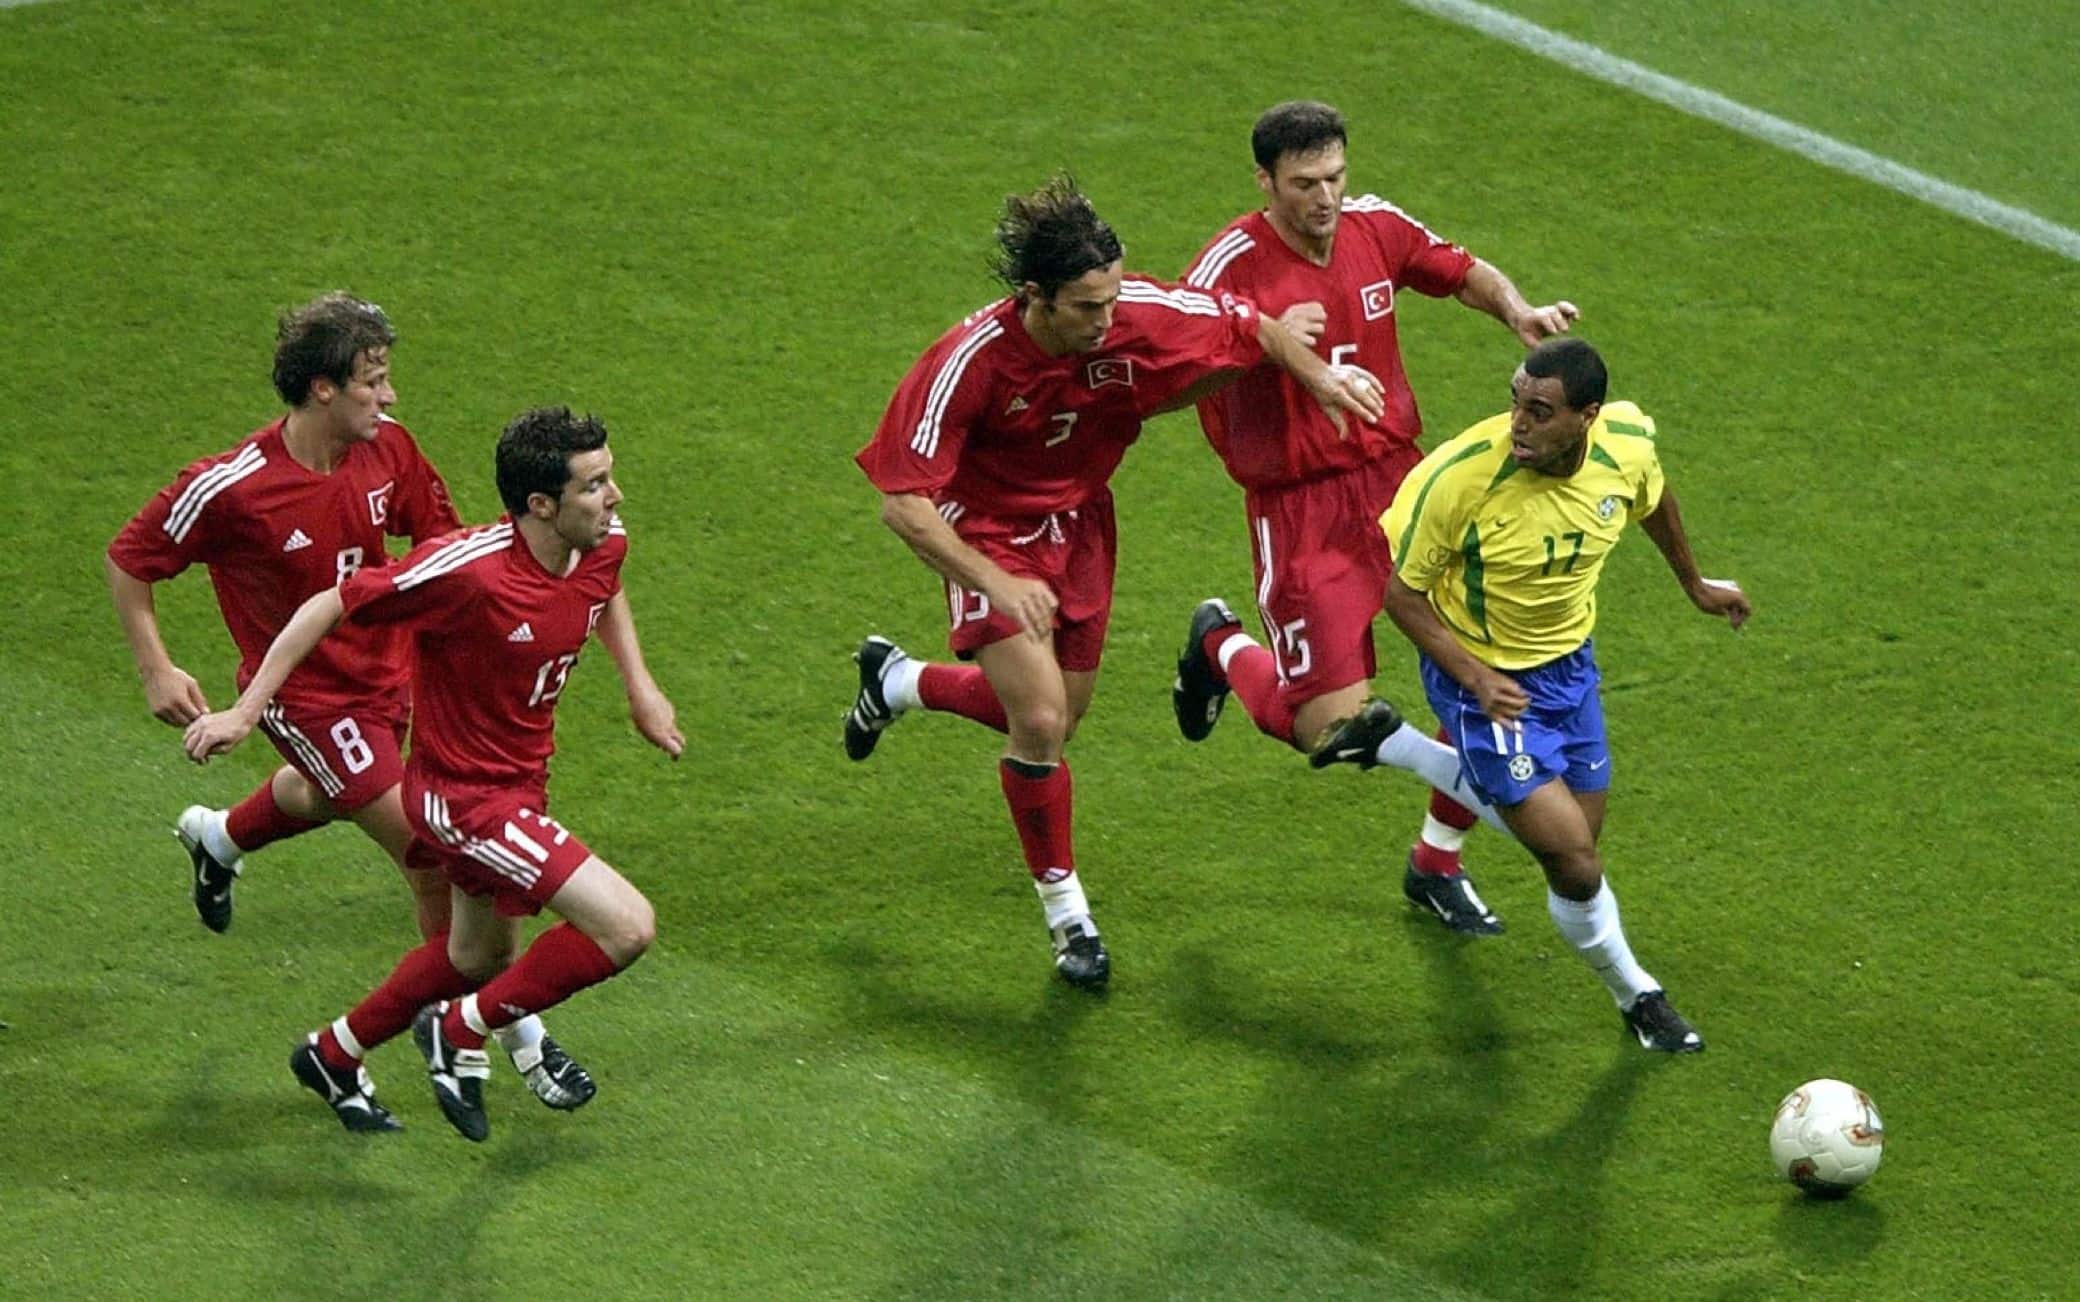 Semifinale del Mondiale 2002 Brasile-Turchia, Denilson scappa verso la bandierina inseguito da quattro avversari